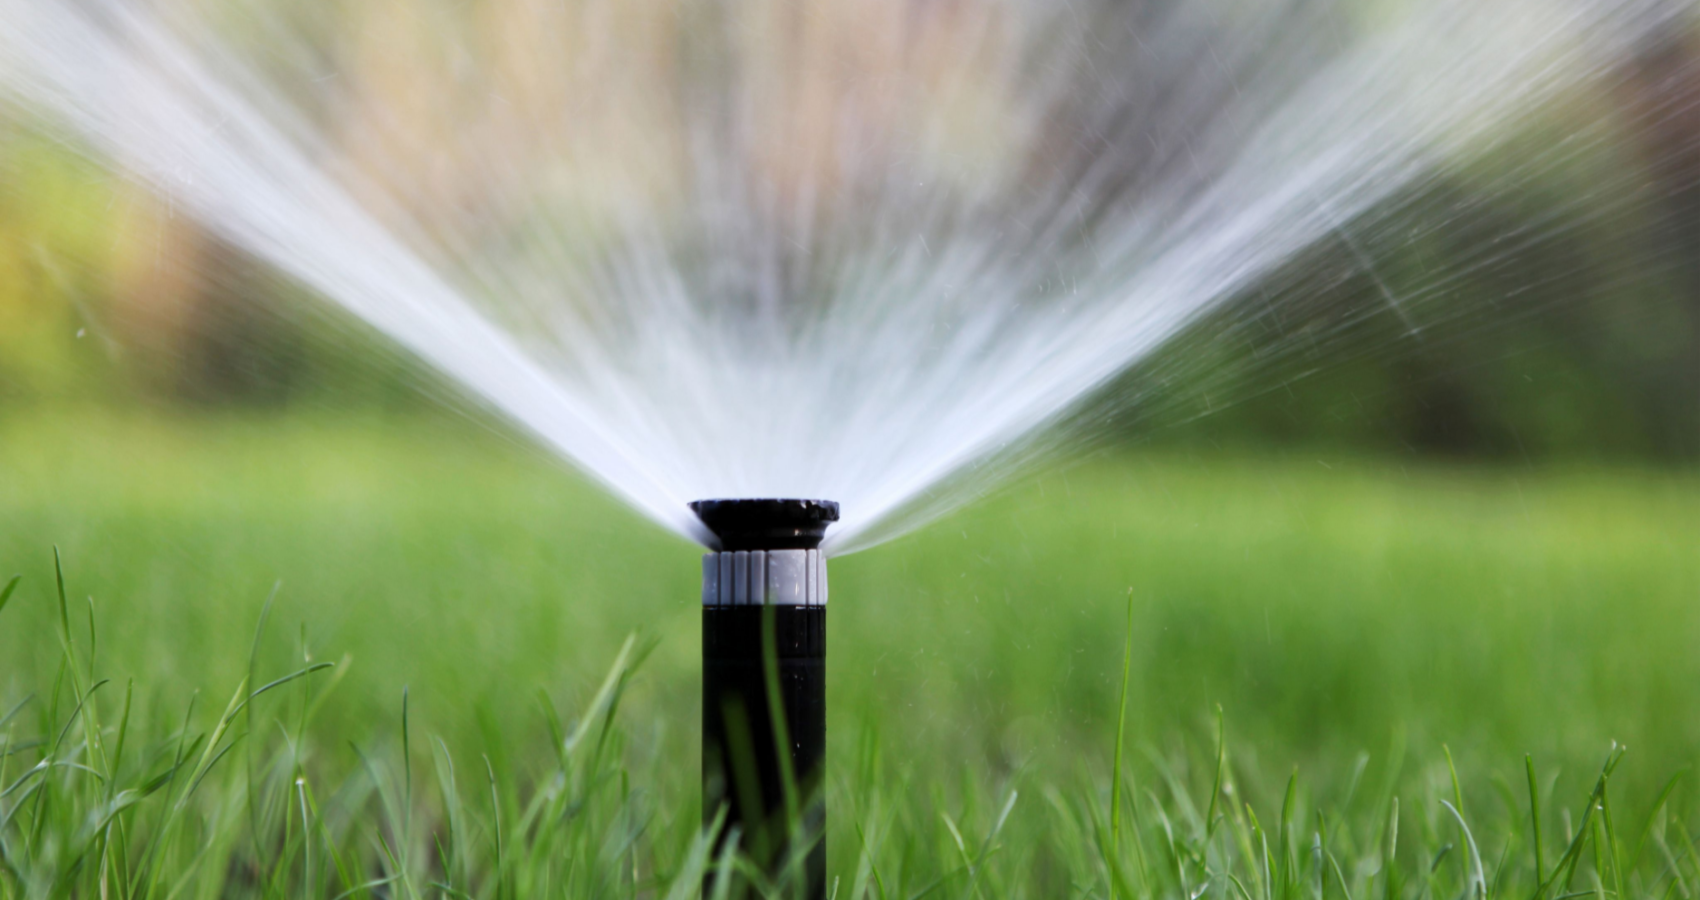 Sprinkler System Installation Olivette, MO | Lawn Care for Olivette, MO Area | Lawn Sprinklers of St. Louis